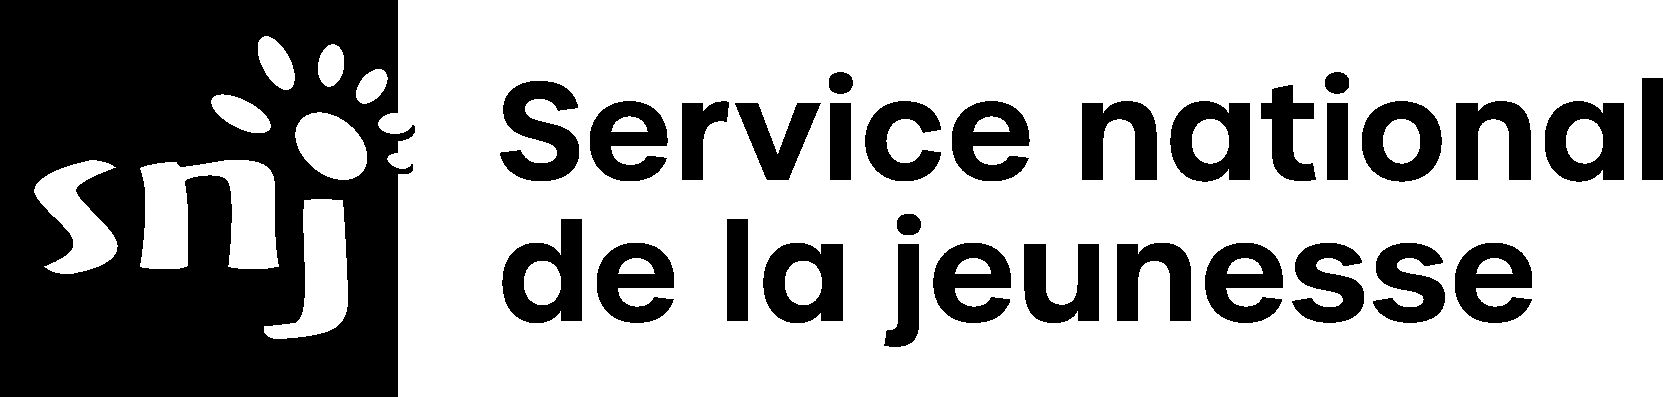 Clients and friends - Service National de la Jeunesse